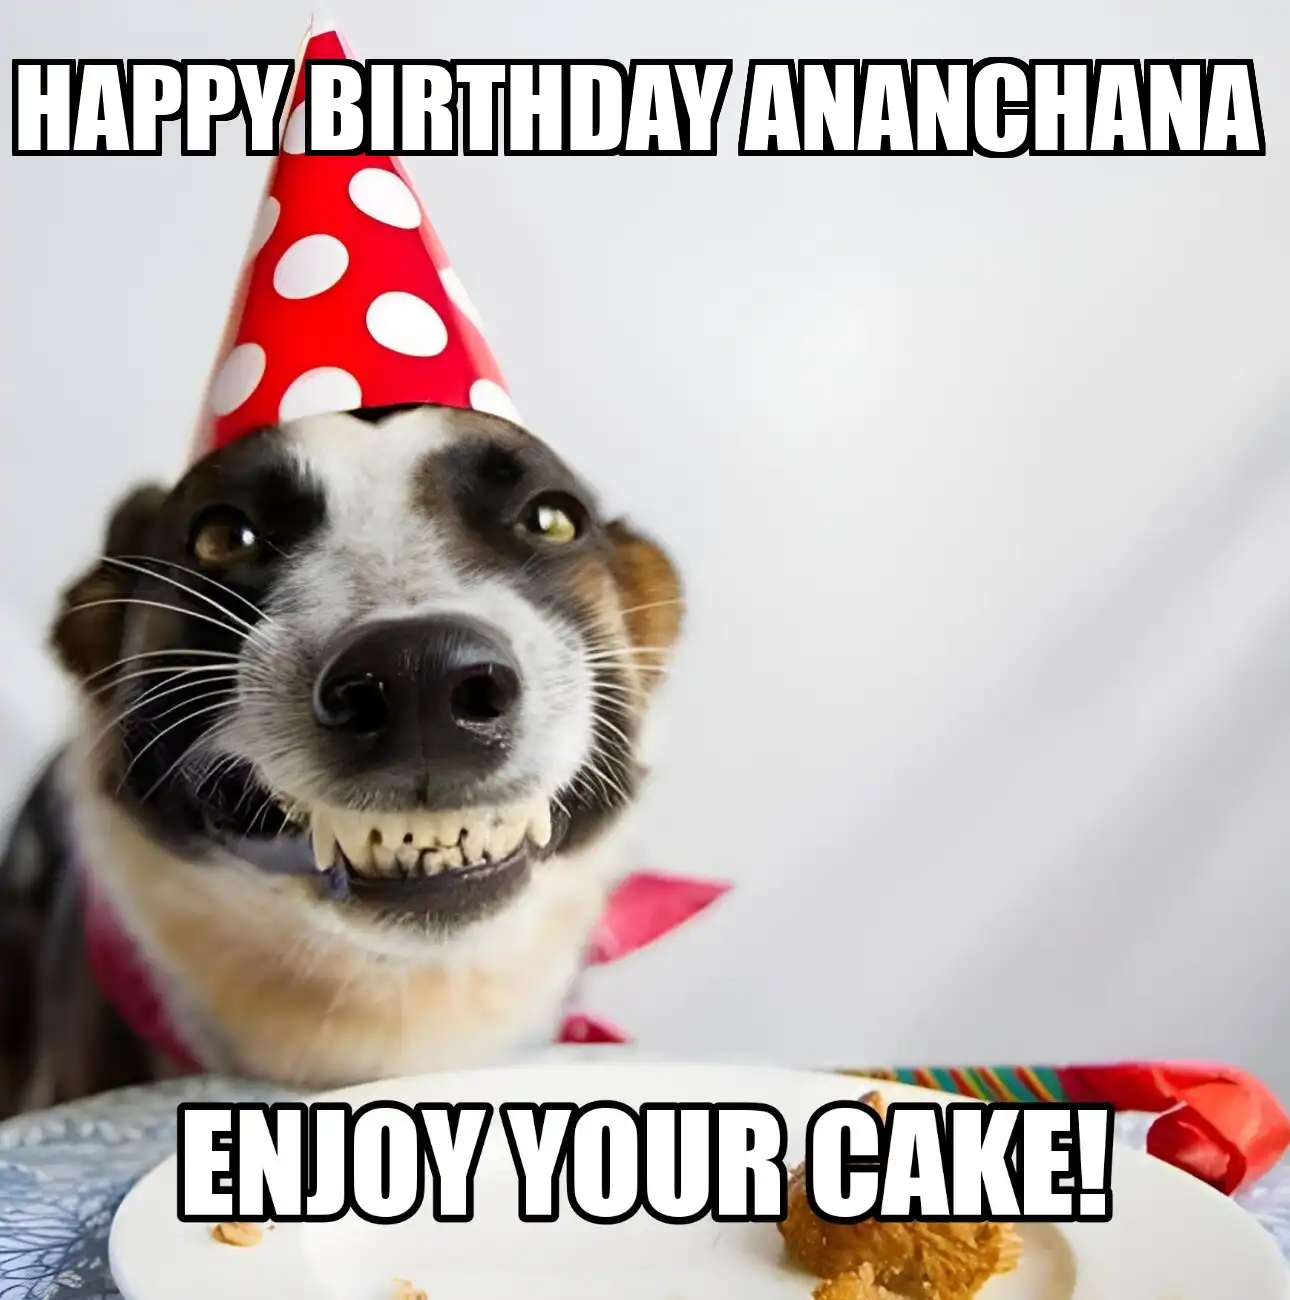 Happy Birthday Ananchana Enjoy Your Cake Dog Meme